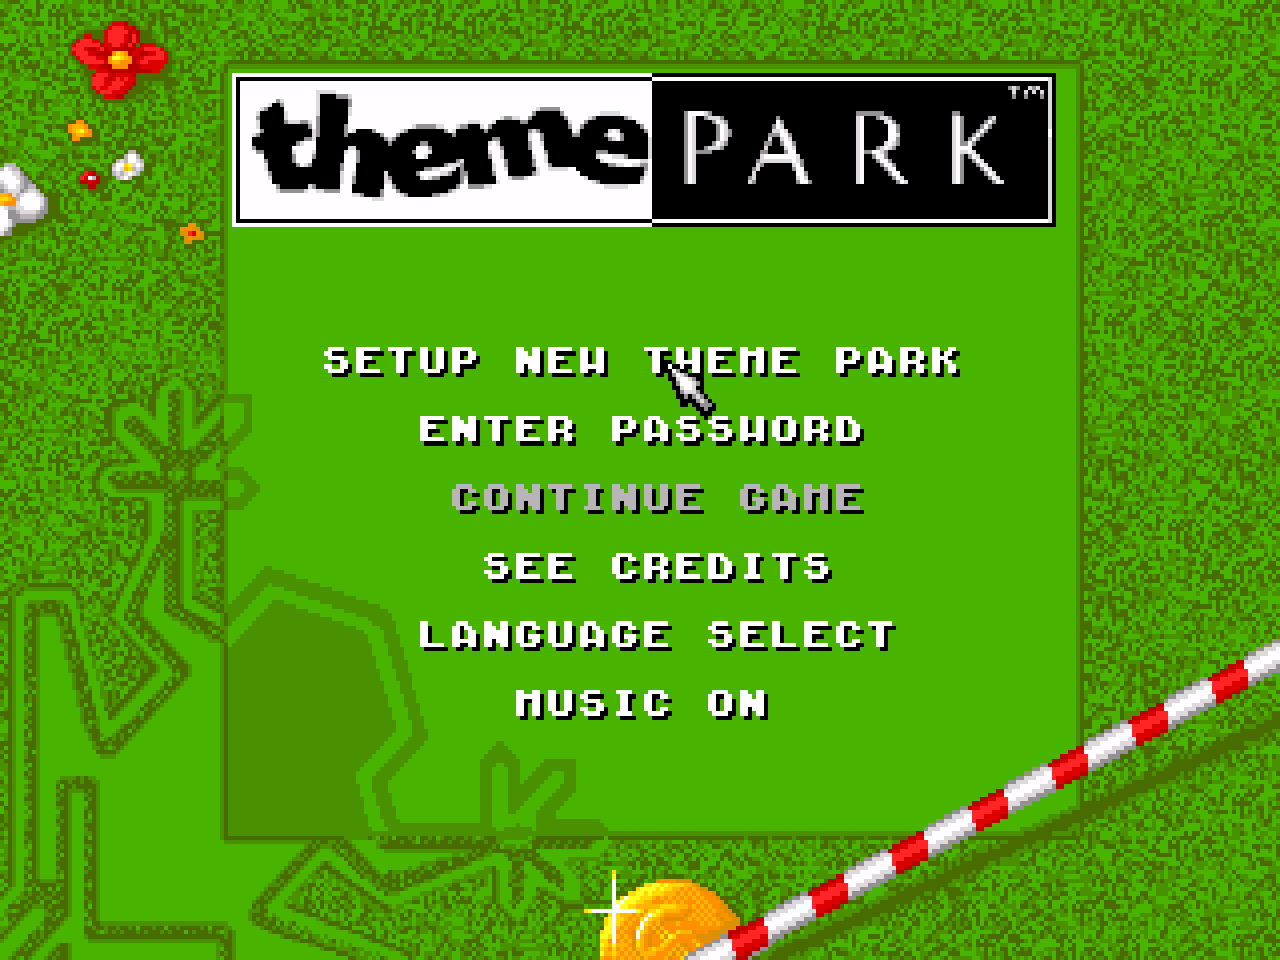 Игра парк сега. Игра на сегу про парк аттракционов. Theme Park игра сега. Theme Park Sega диск. Игра на Денди парк развлечений.